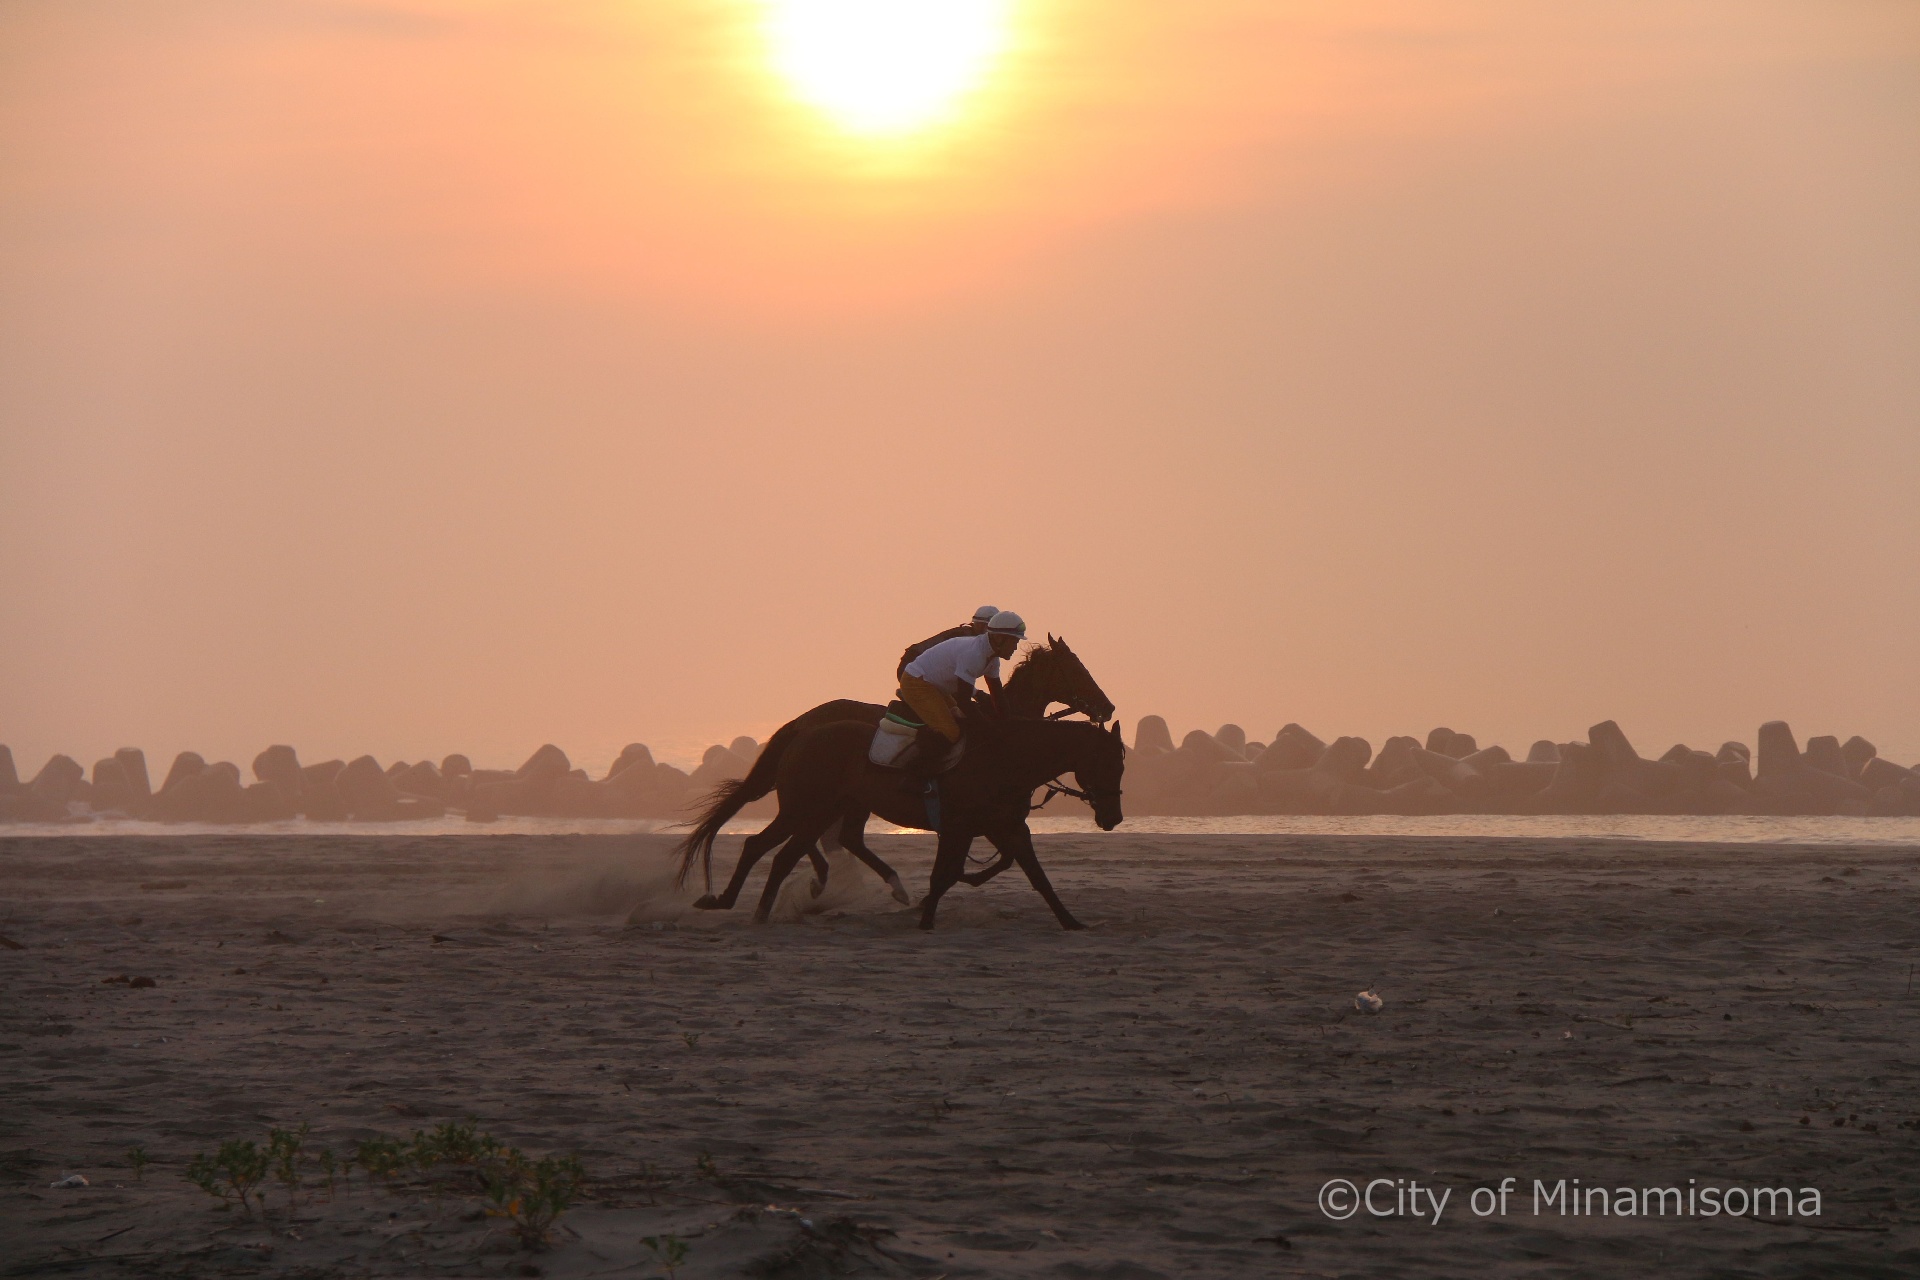 烏崎海岸での早朝錬馬の様子。7月の相馬野馬追に向けての練習で、早朝の砂浜を、人を乗せた馬が2頭走っている。